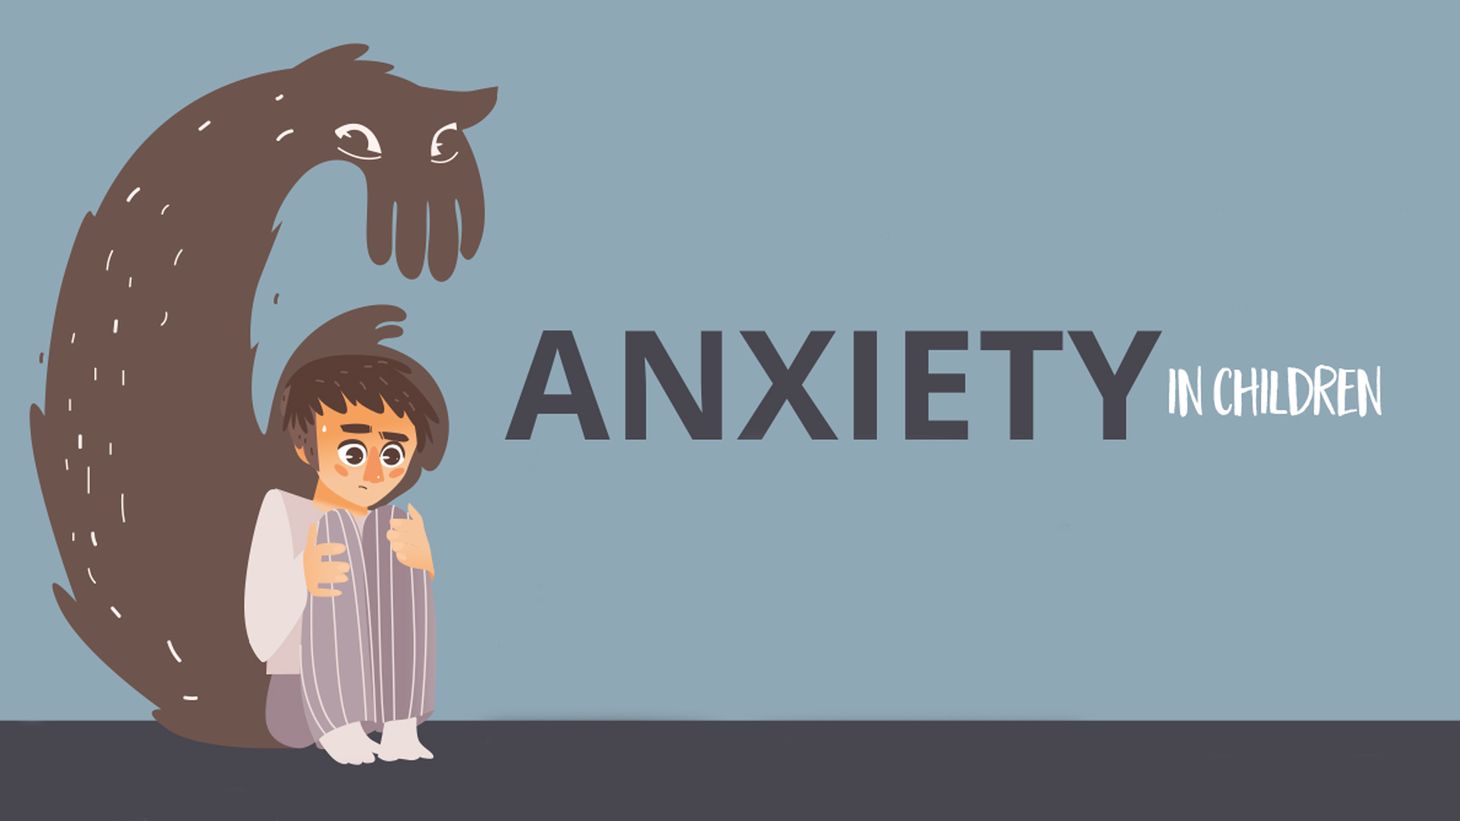 Anxiety in children